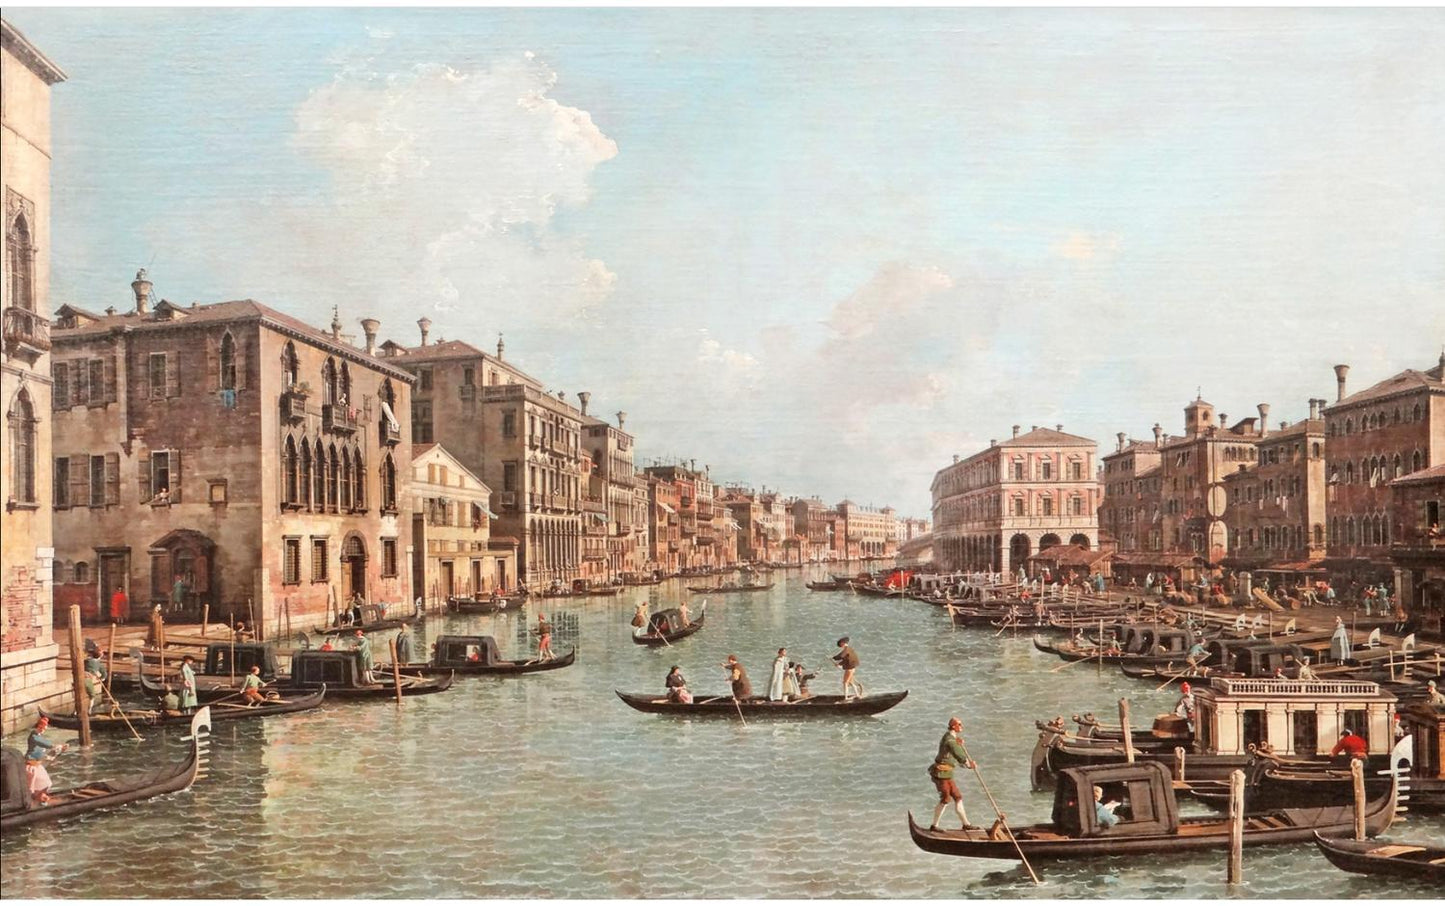 Grand canal, Campo Santa Sophia to Rialto Bridge, Canaletto